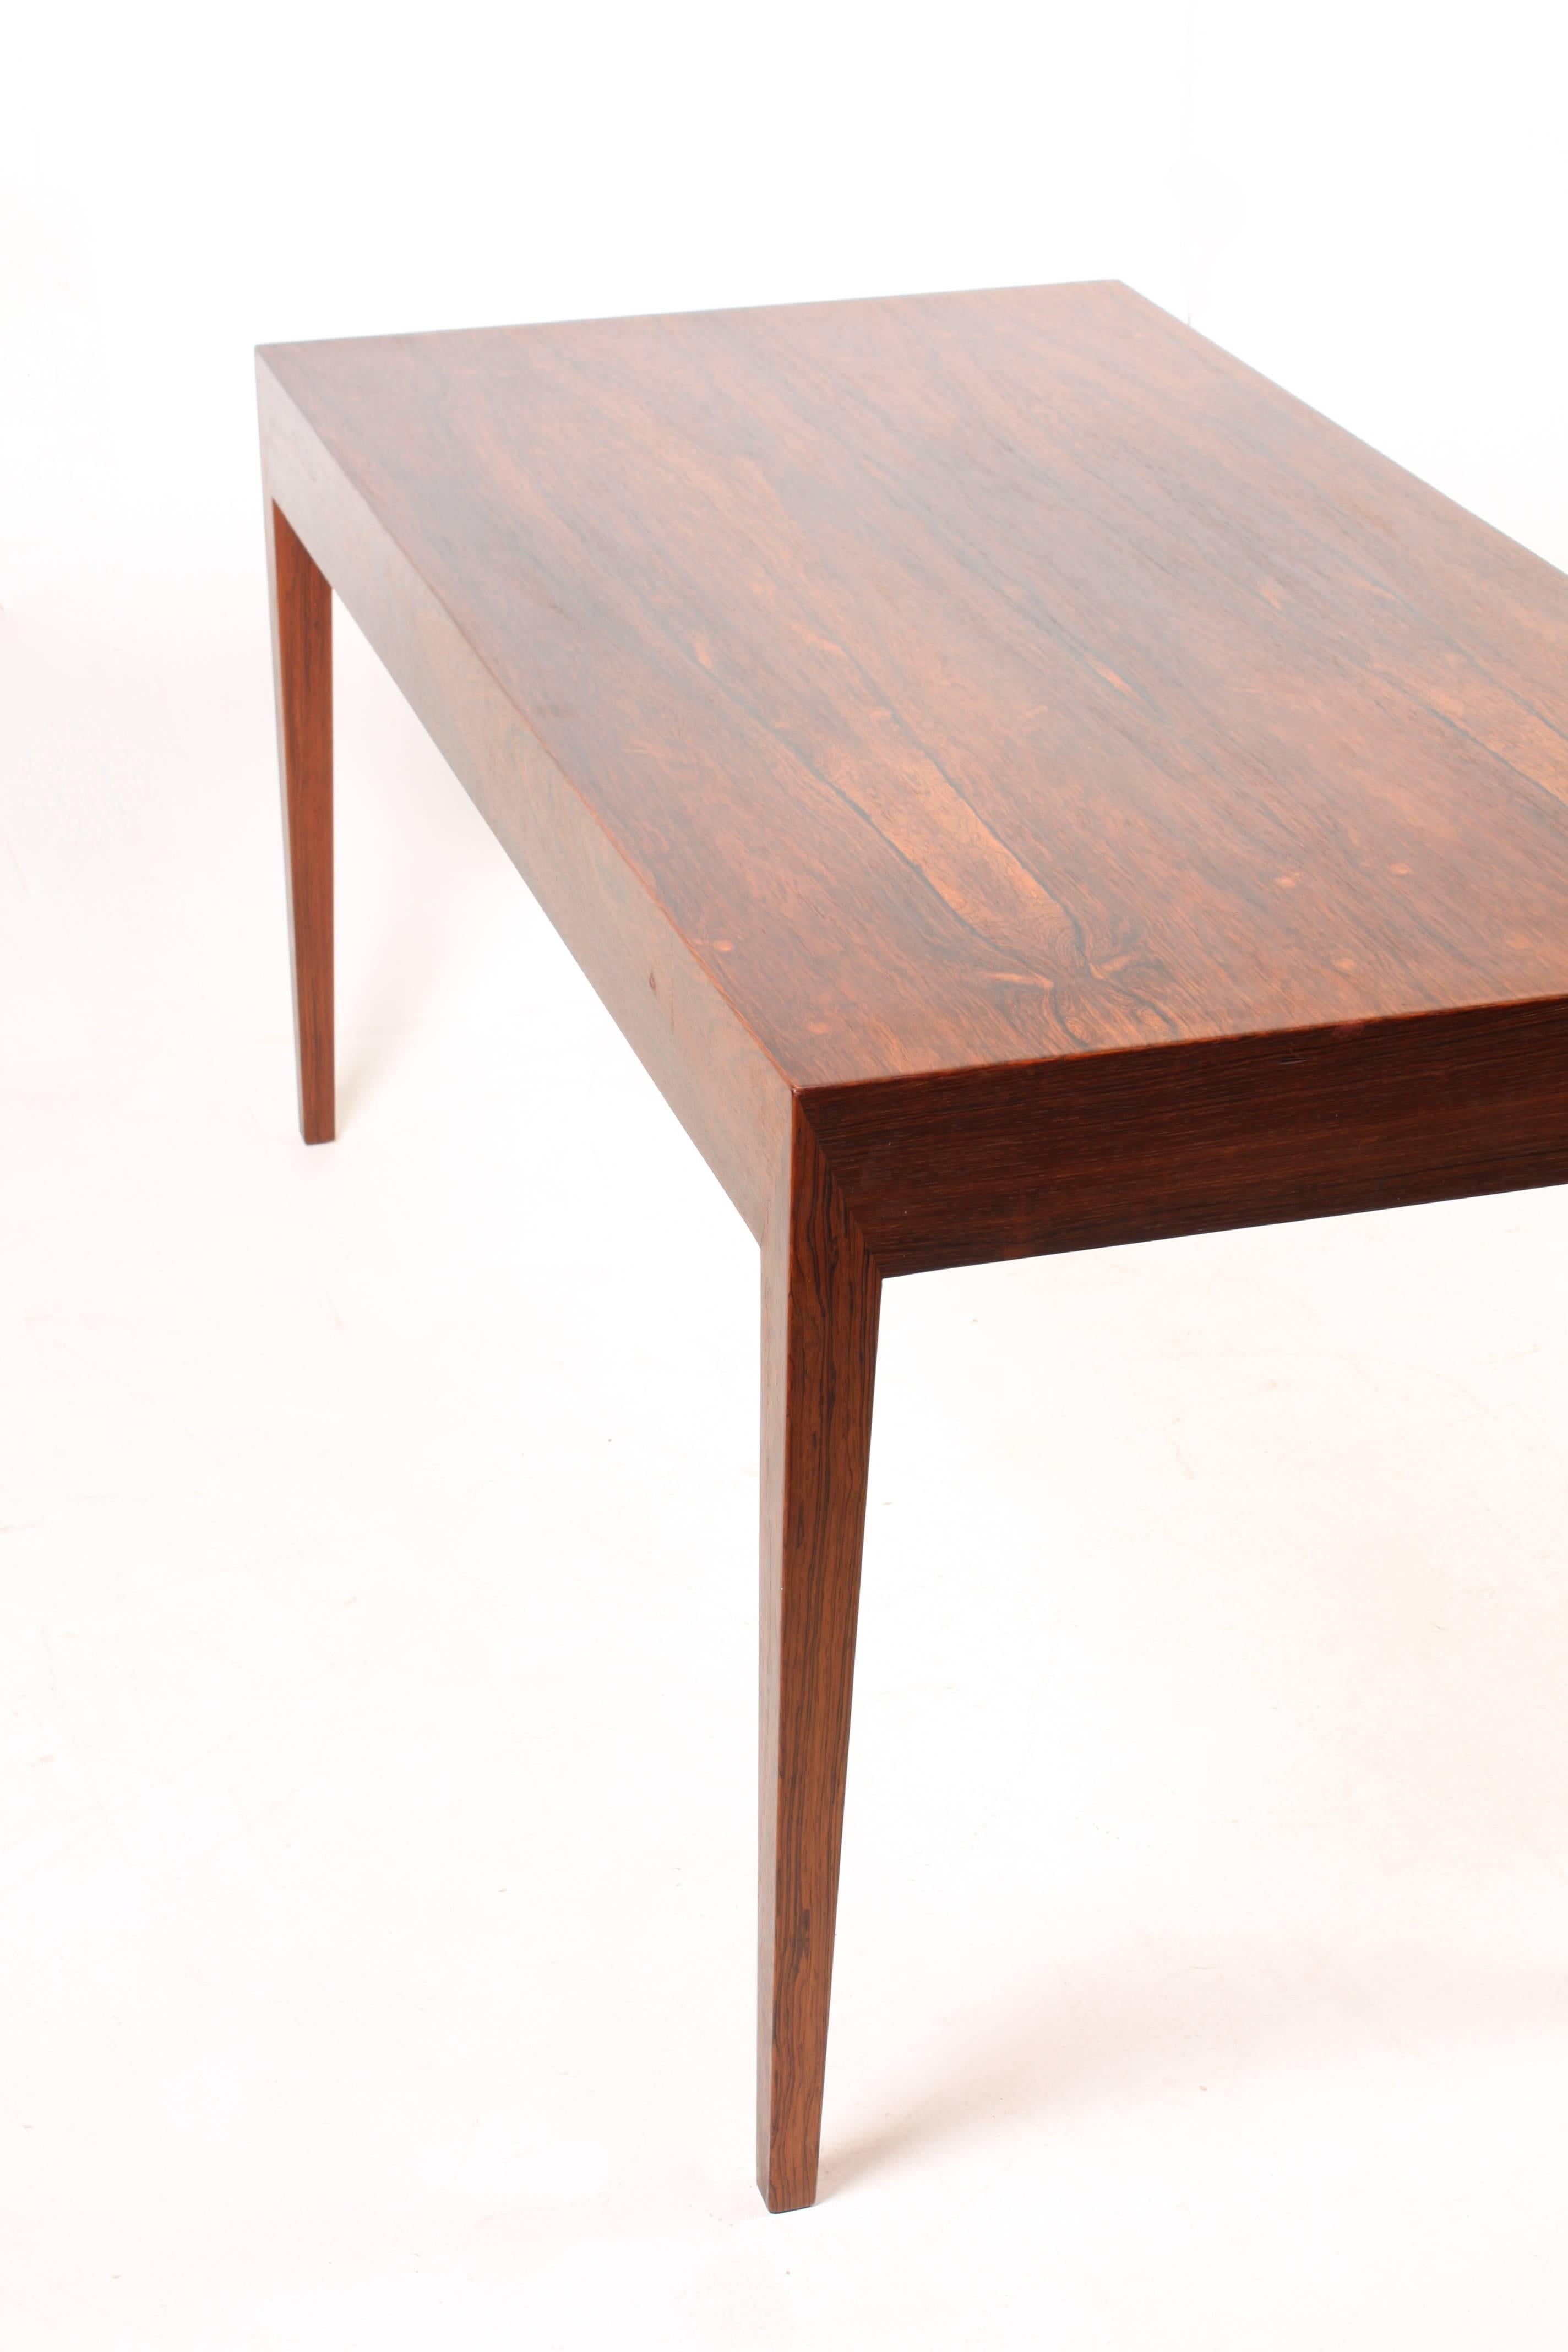 Danish Elegant Desk Designed by Severin Hansen Jr.